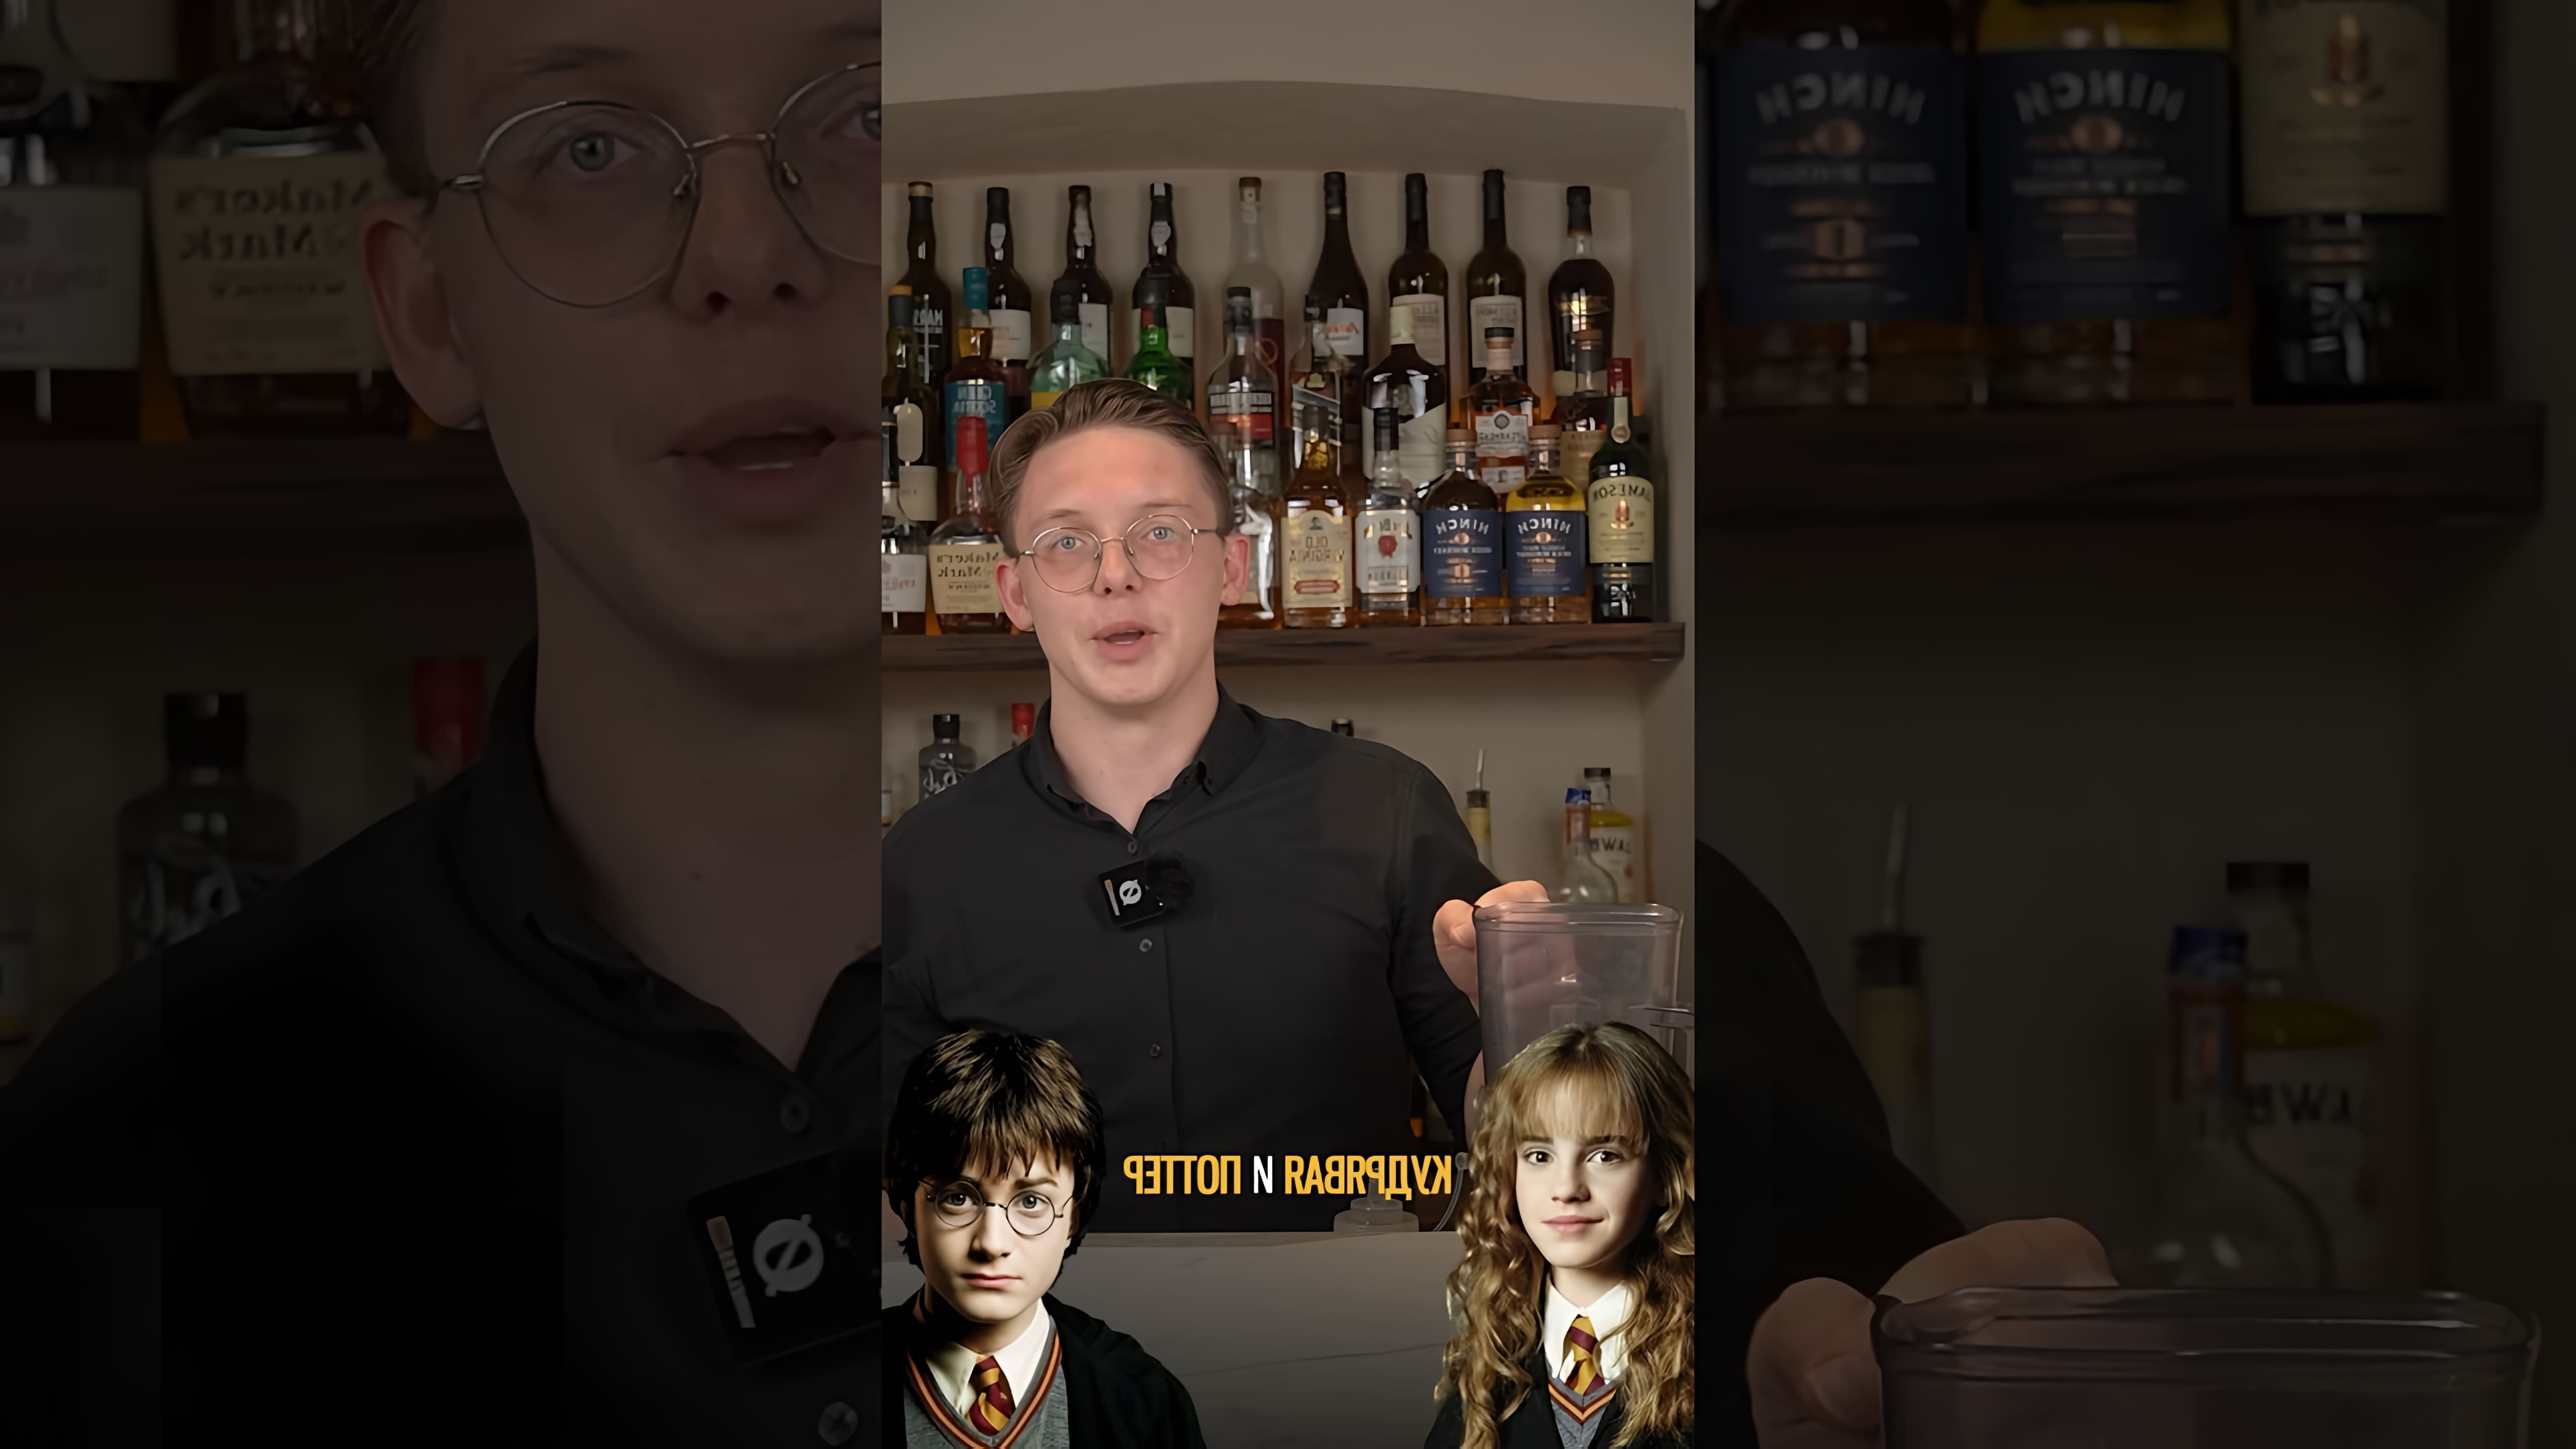 В этом видео демонстрируется рецепт приготовления сливочного пива, которое пили герои книг о Гарри Поттере